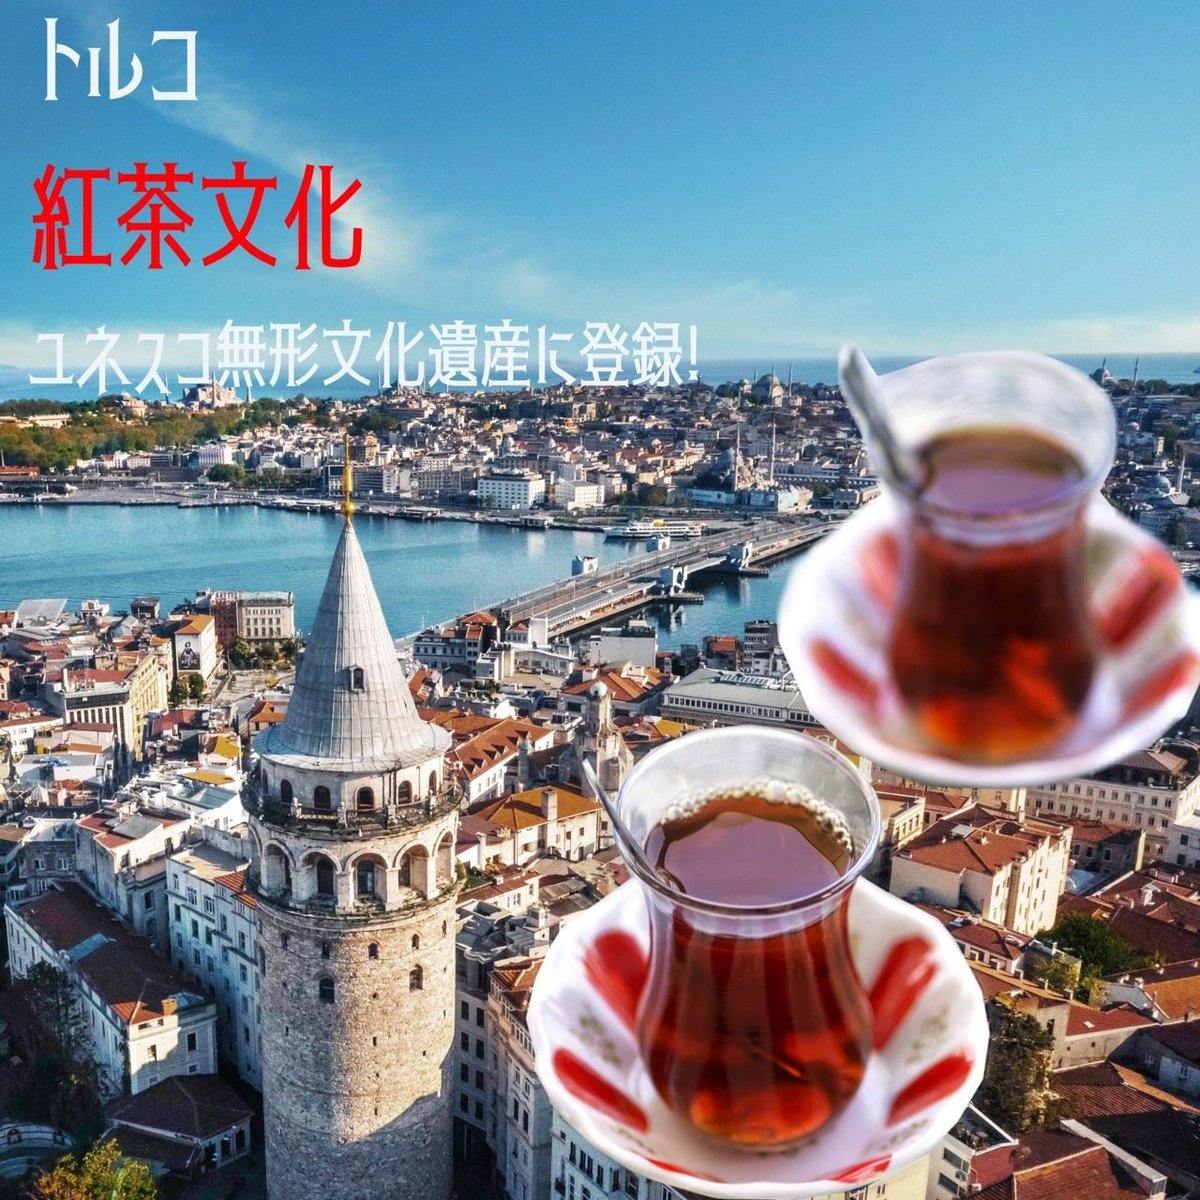 トルコの紅茶文化が、ユネスコ無形文化遺産に登録されました✨ 紅茶は、トルコでチャイの名称で親しまれています。 小さなチューリップ型のグラスで提供され、トルコ全土で一日中飲まれているんですよ🇹🇷